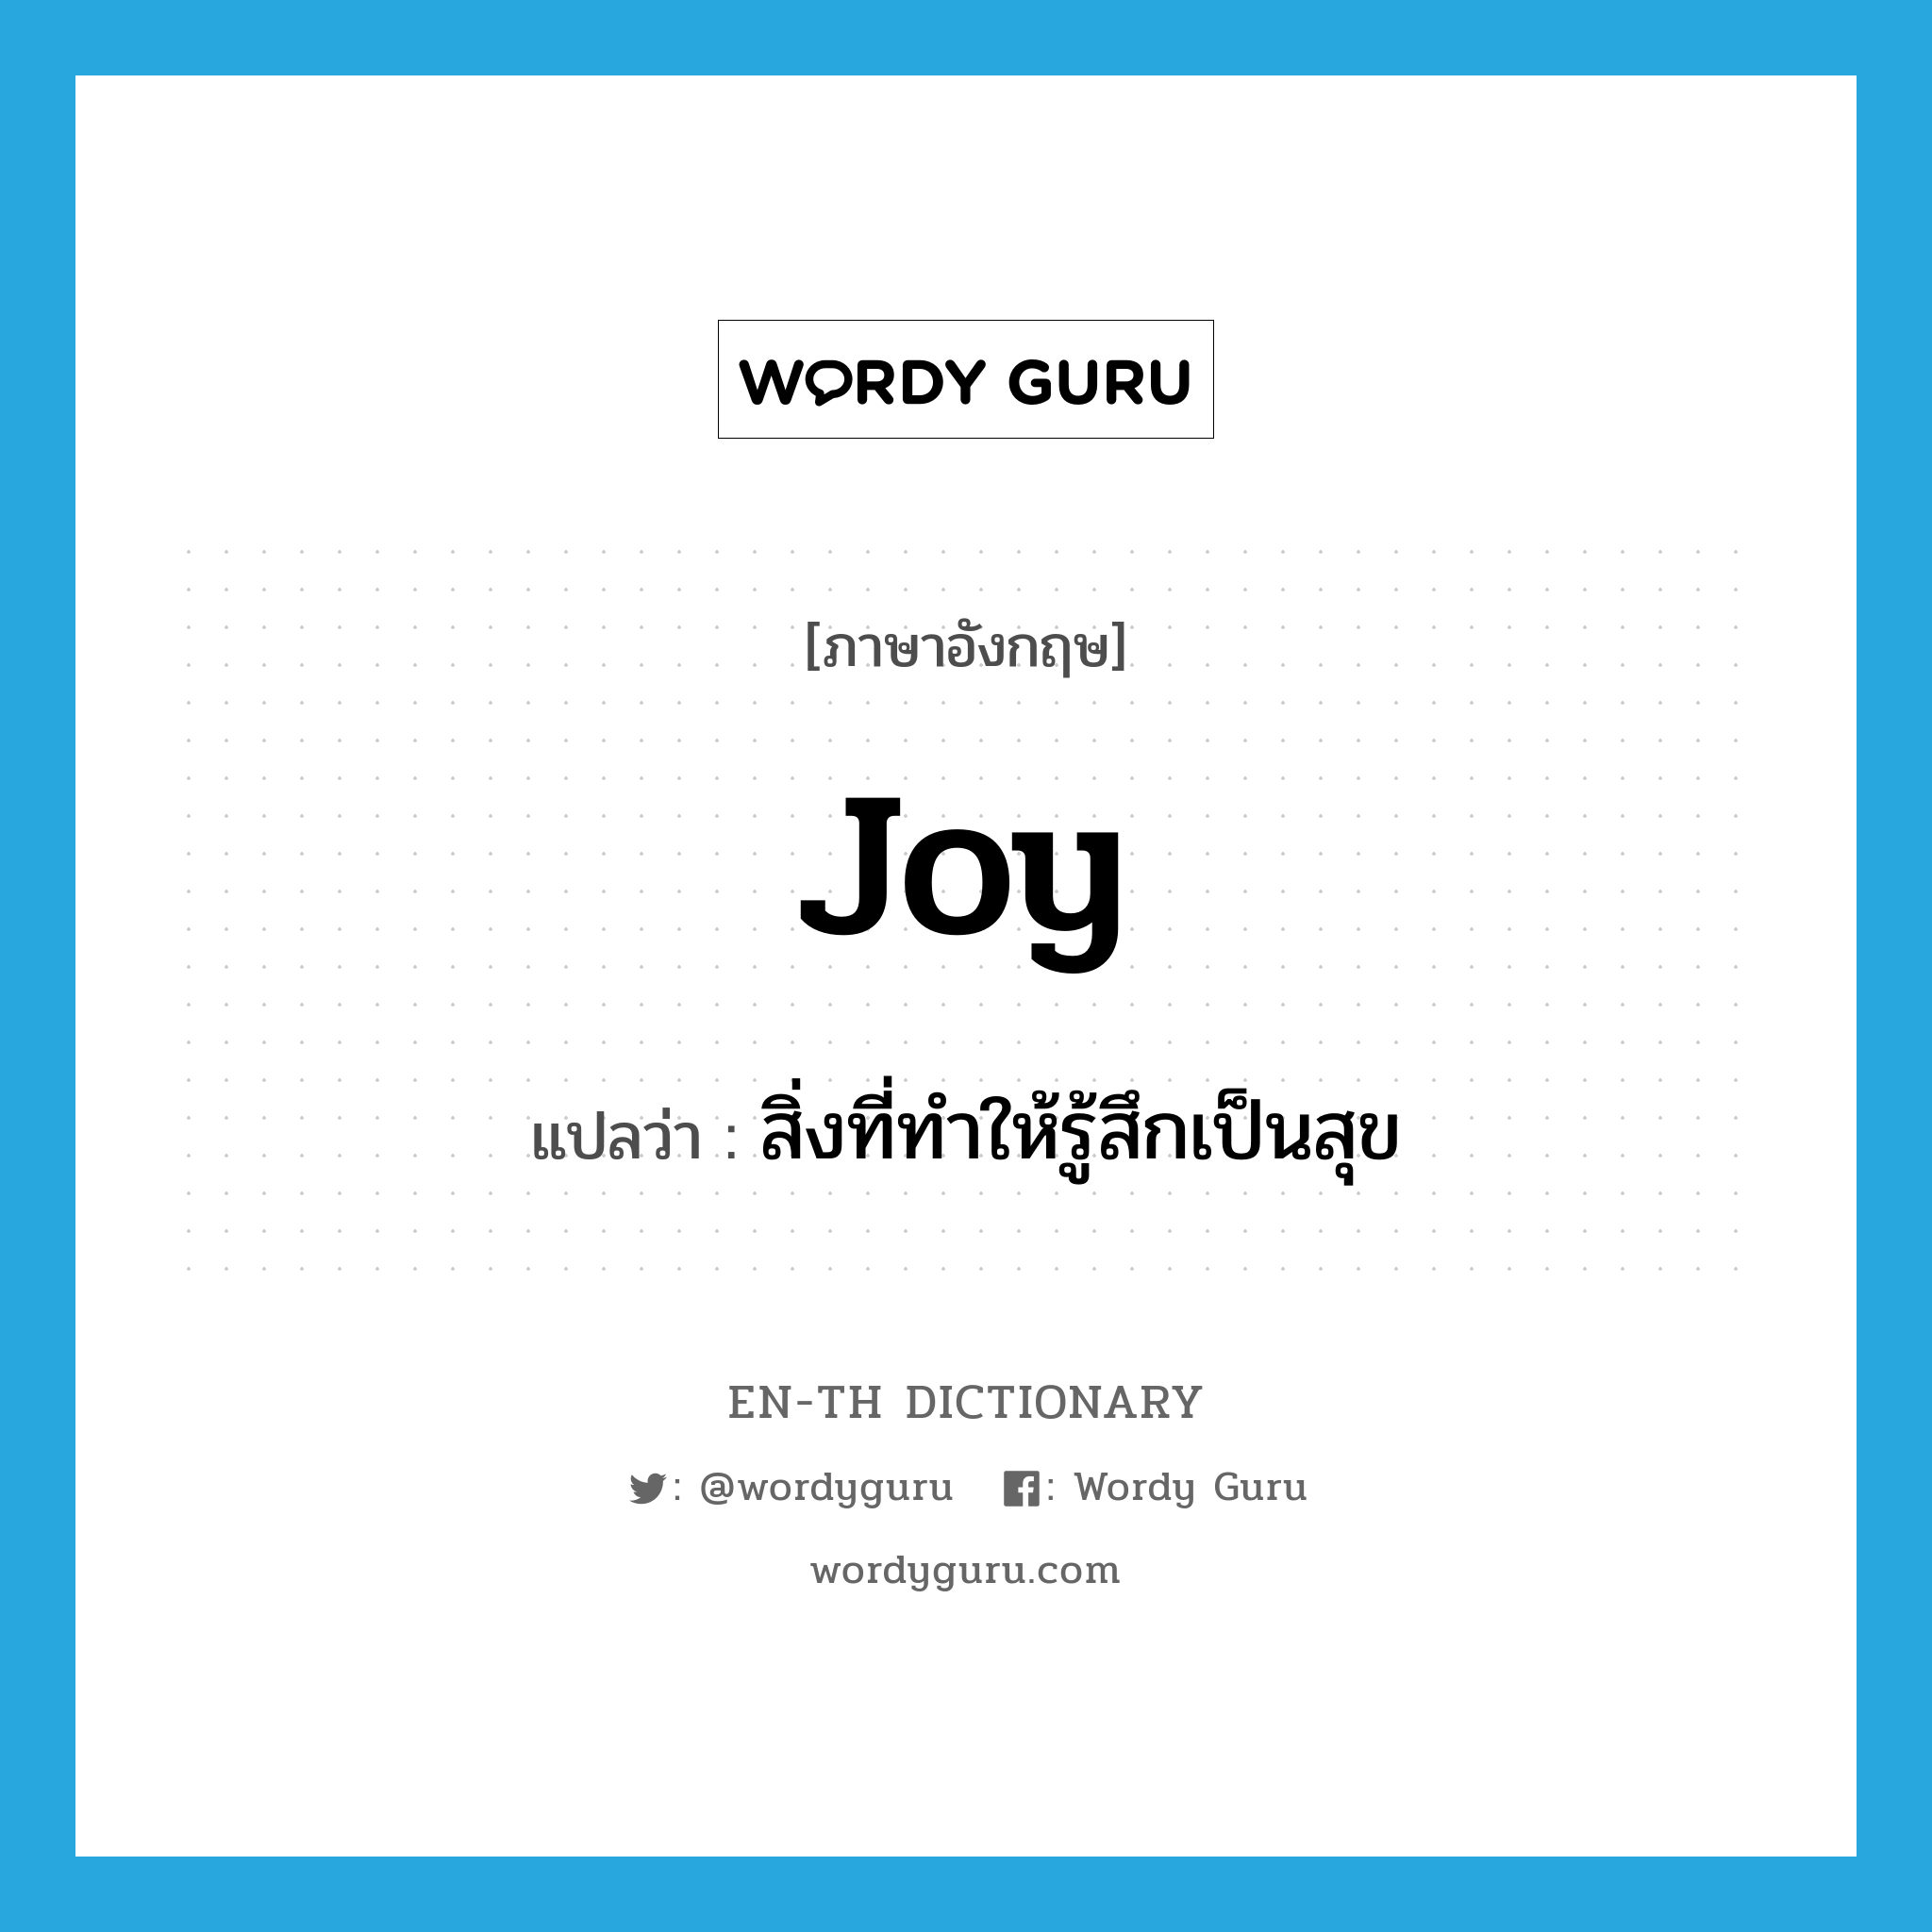 สิ่งที่ทำให้รู้สึกเป็นสุข ภาษาอังกฤษ?, คำศัพท์ภาษาอังกฤษ สิ่งที่ทำให้รู้สึกเป็นสุข แปลว่า joy ประเภท N หมวด N